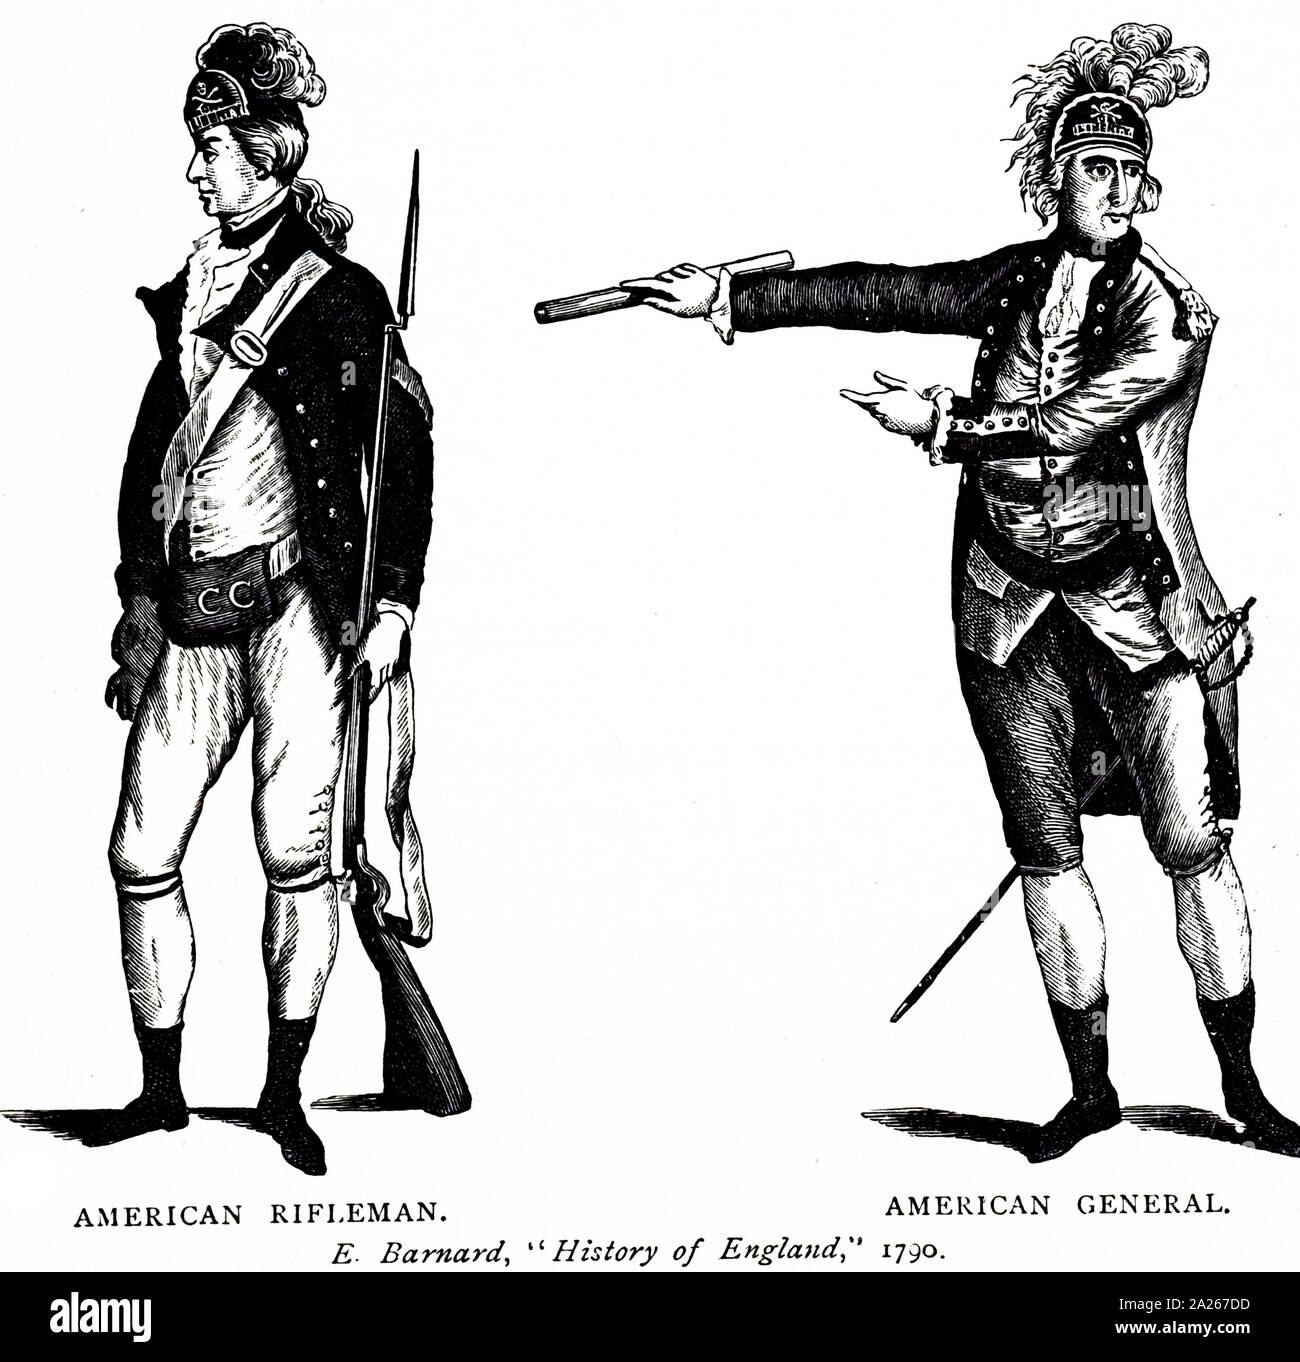 Eine Gravur, eine American Rifleman (links) und Allgemeine (rechts). Vom 19. Jahrhundert Stockfoto